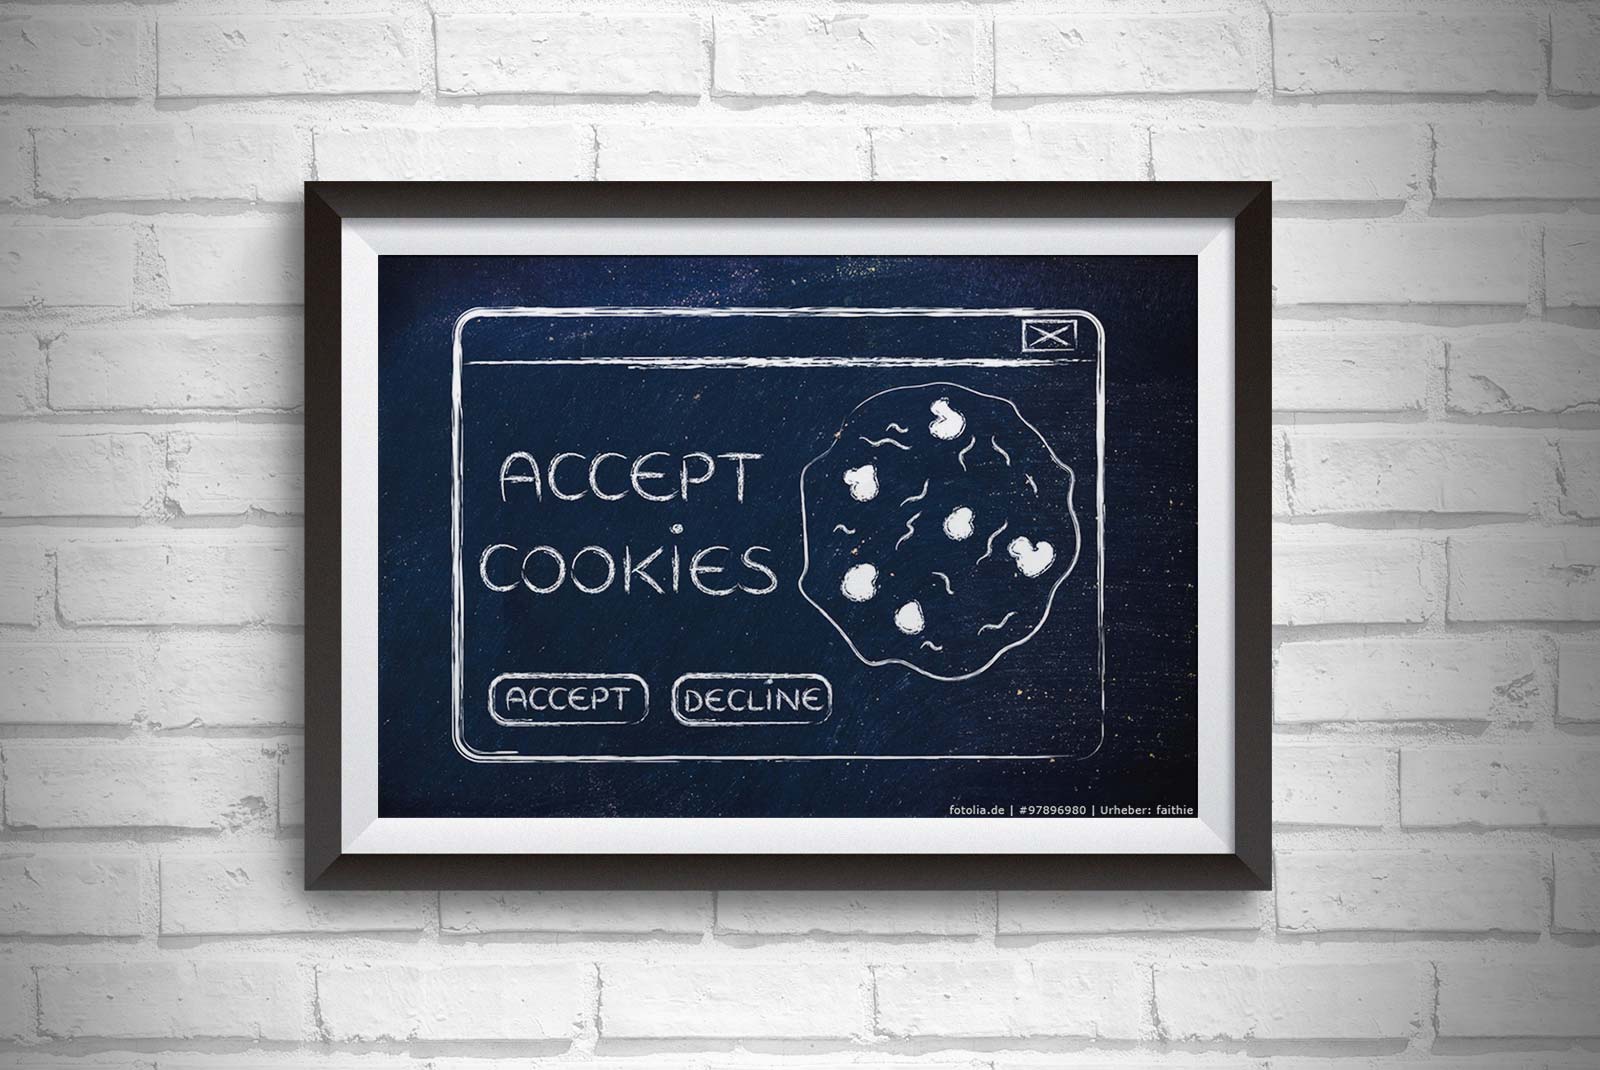 Cookies akzeptieren?